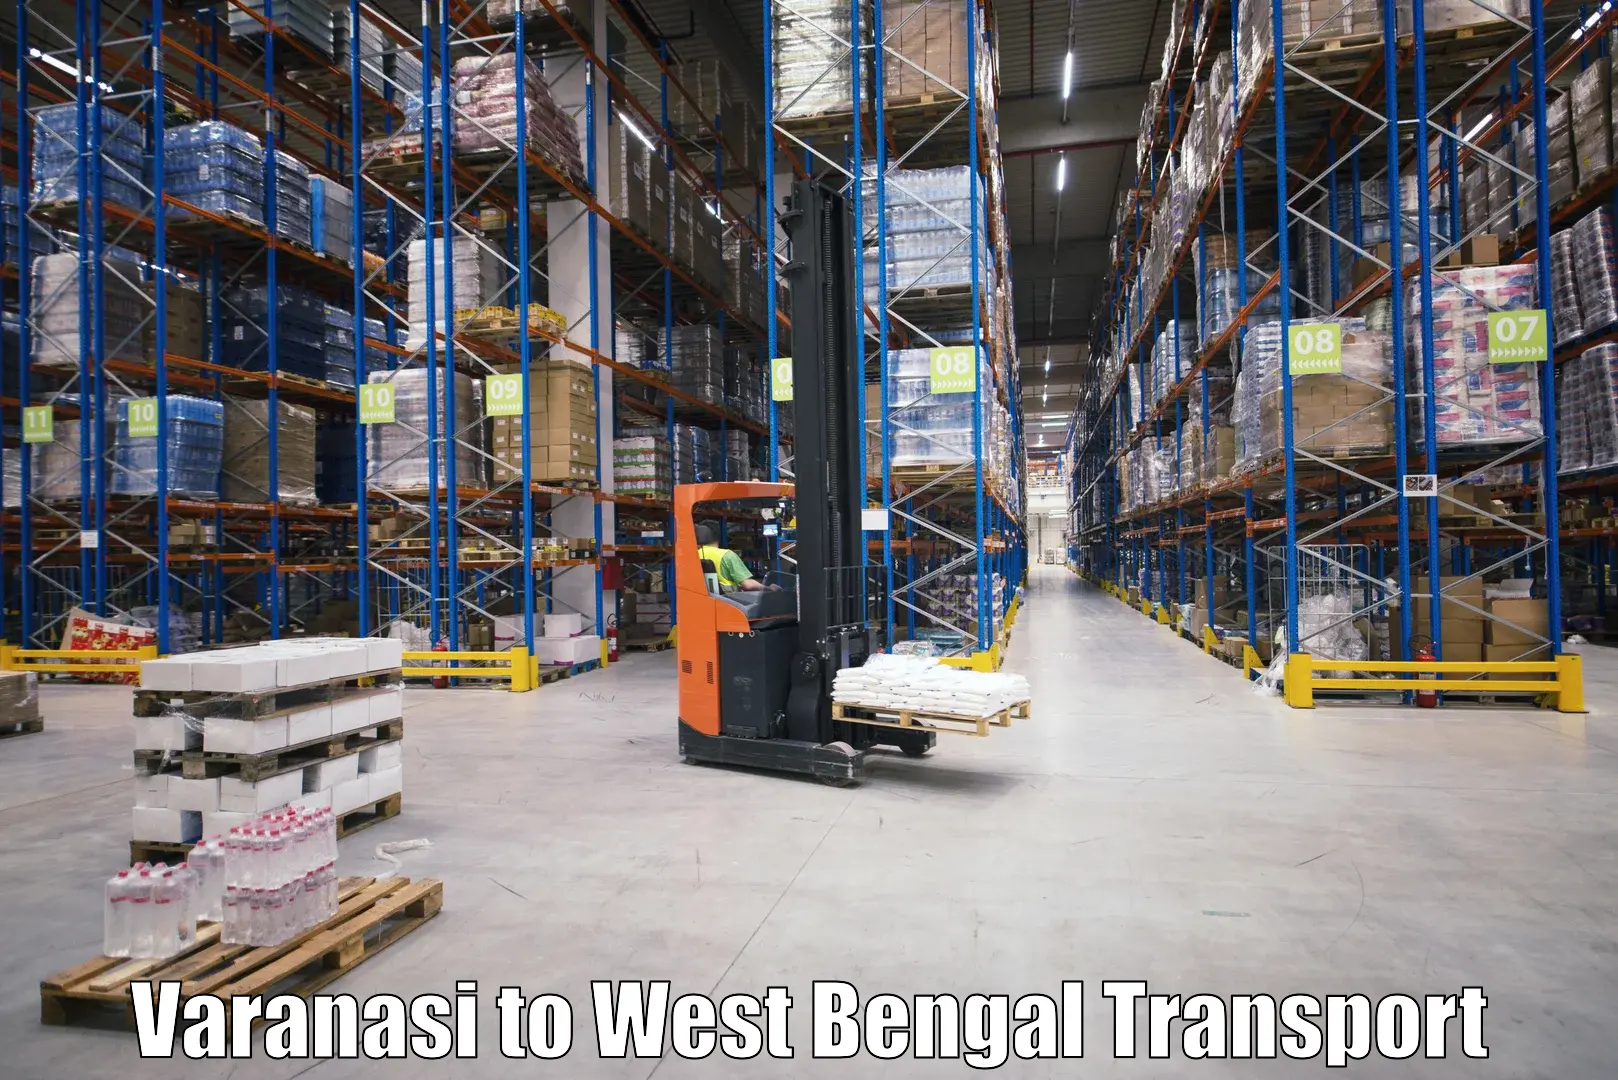 Transport services Varanasi to Bara Bazar